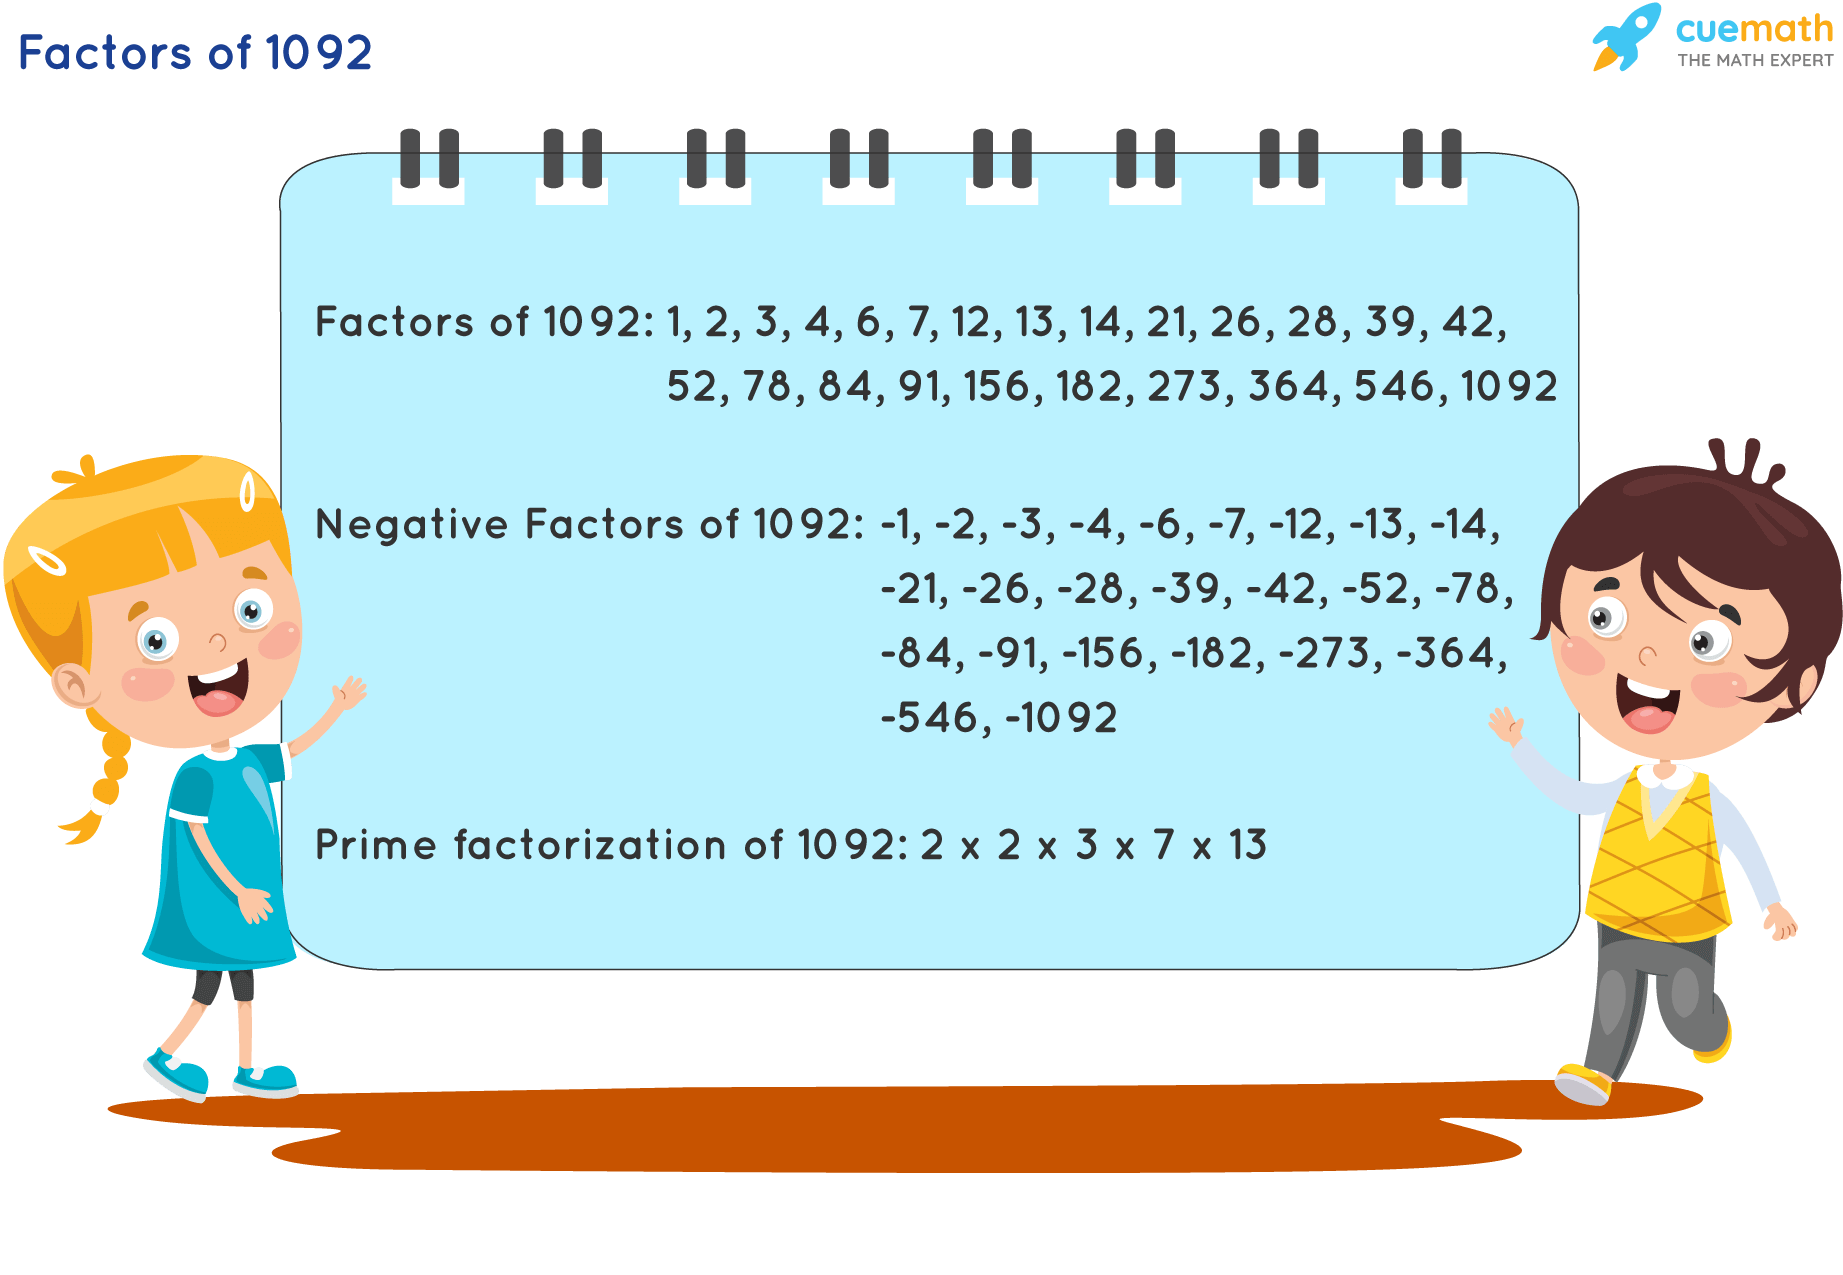 Factors of 1092